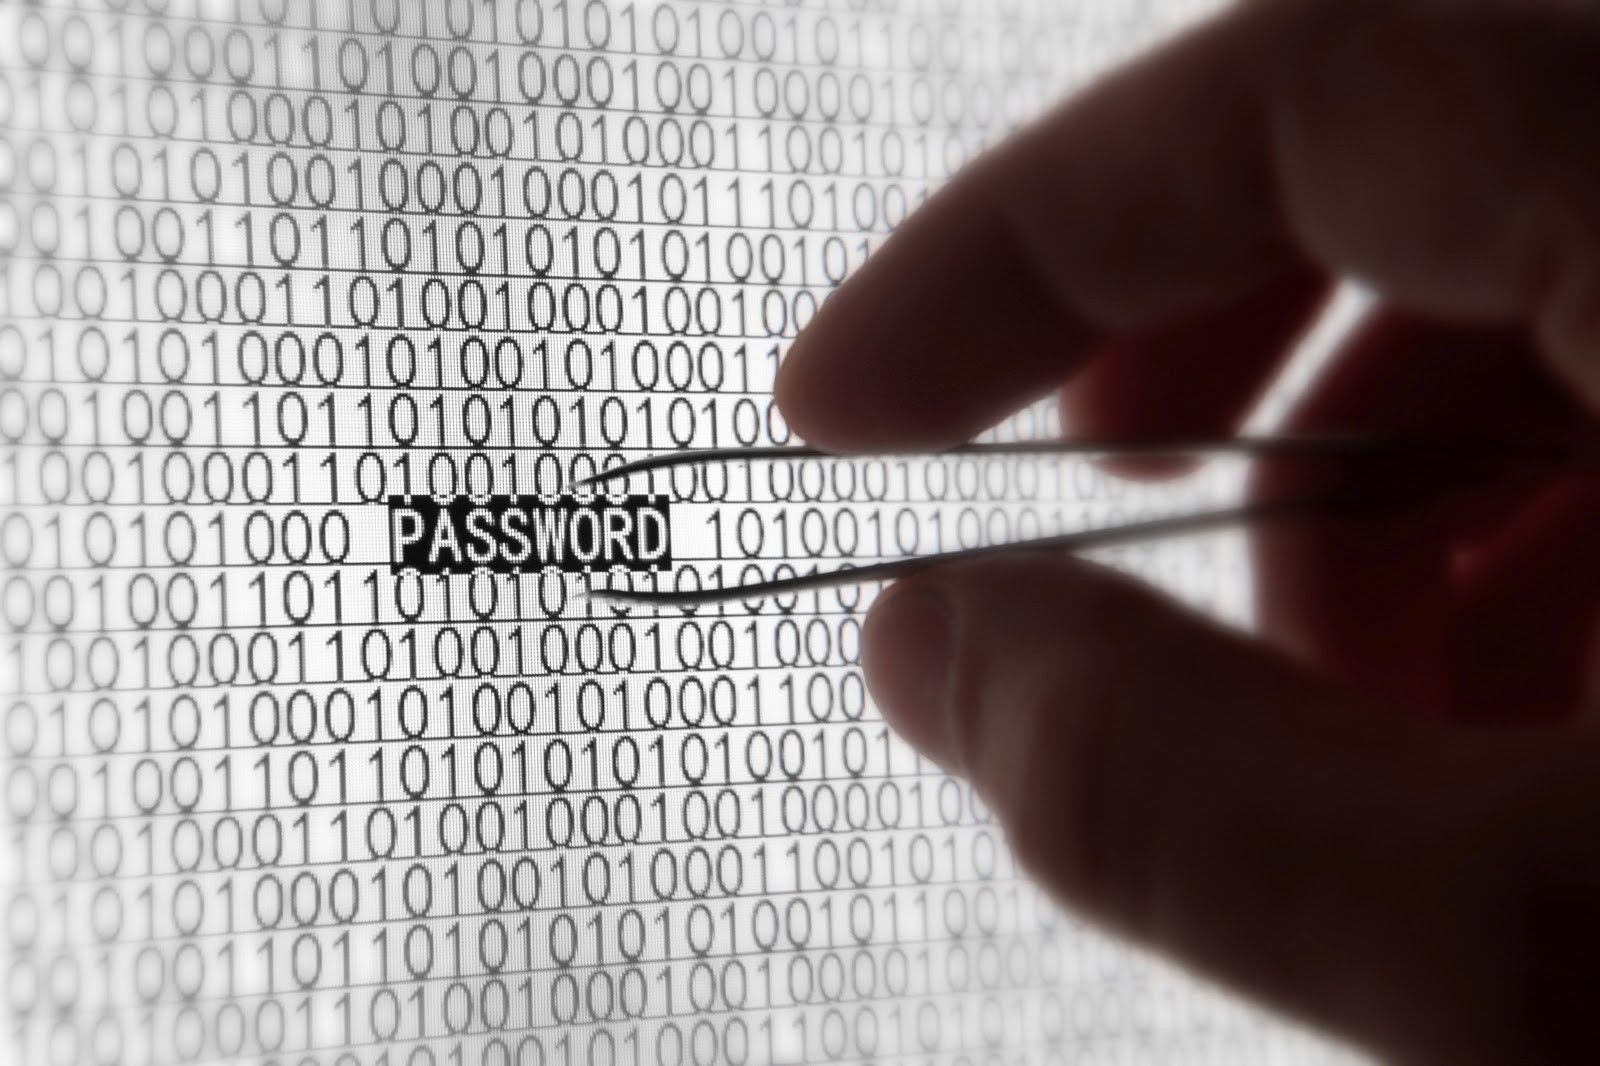 İnternette büyük veri hırsızlığı ! Hemen şifrelerinizi değiştirin